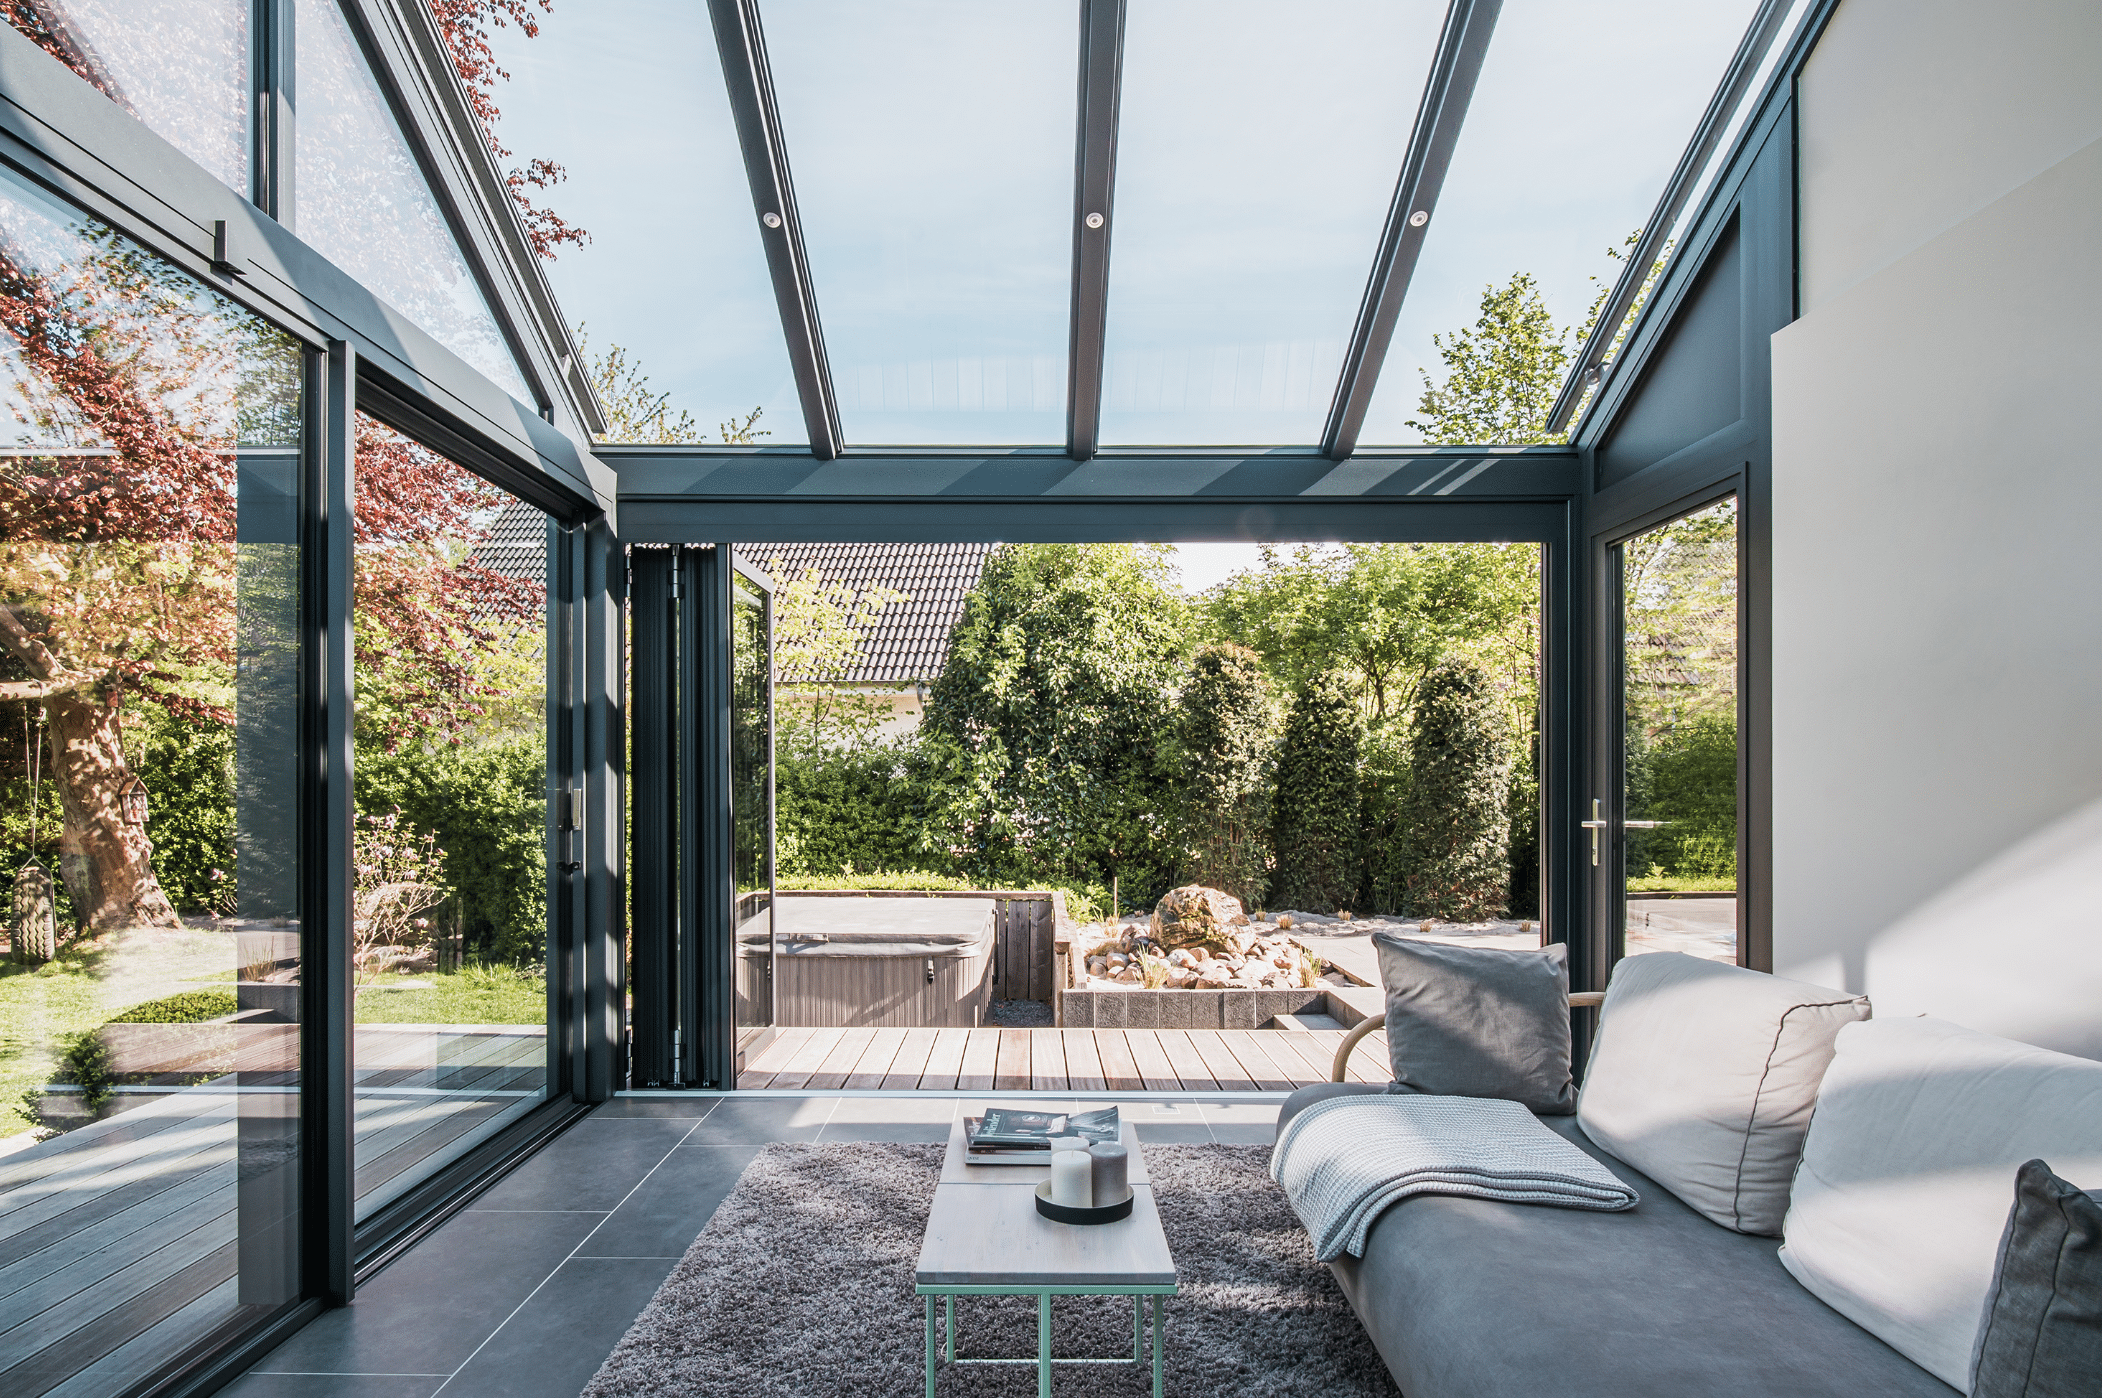 Solarlux zeigt einen gläsernen Wintergarten mit Glasschiebetüren und einem Panoramadach mit gemütlicher Sitzlandschaft und freiliegendem Teppich.